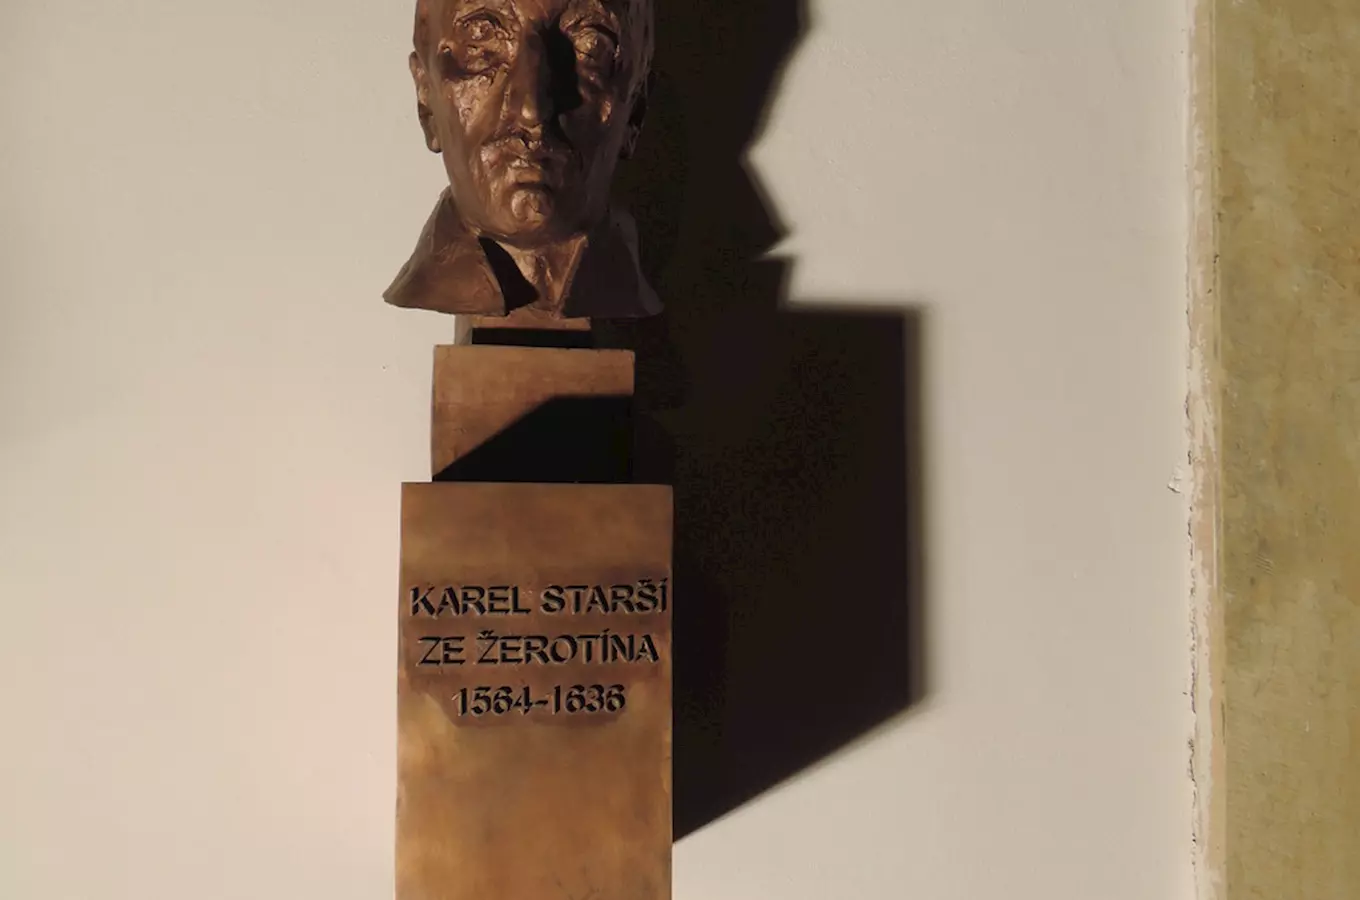 Busta Karla staršího ze Žerotína v Bludově